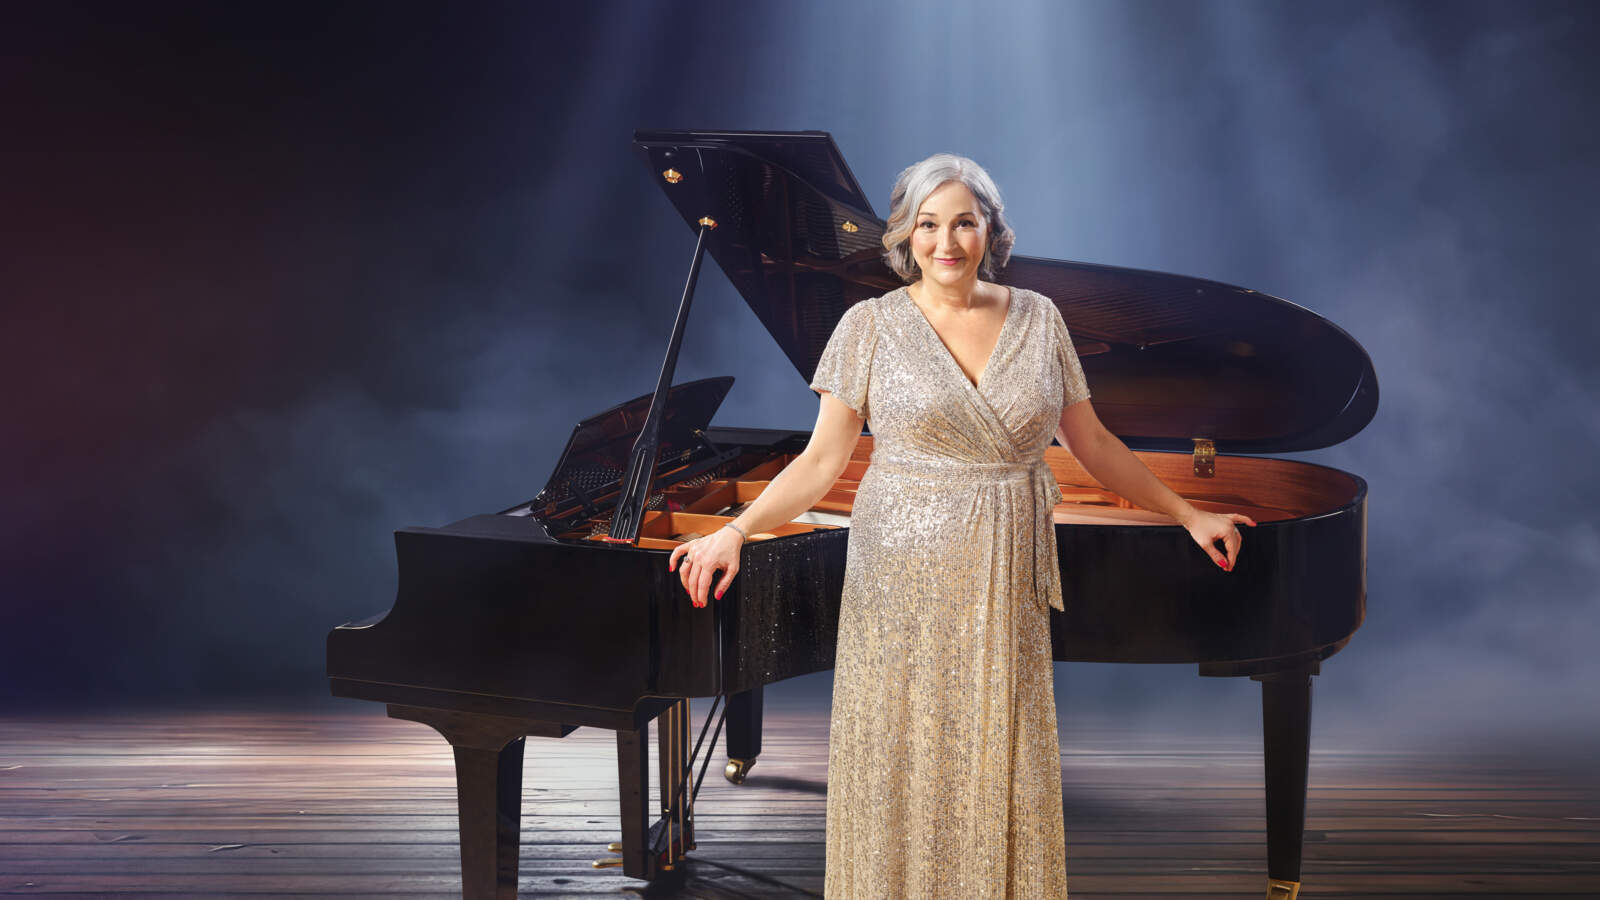 En operasolist i silverglittrig klänning står lutad mot en flygel på en annars tom scen under ljus.